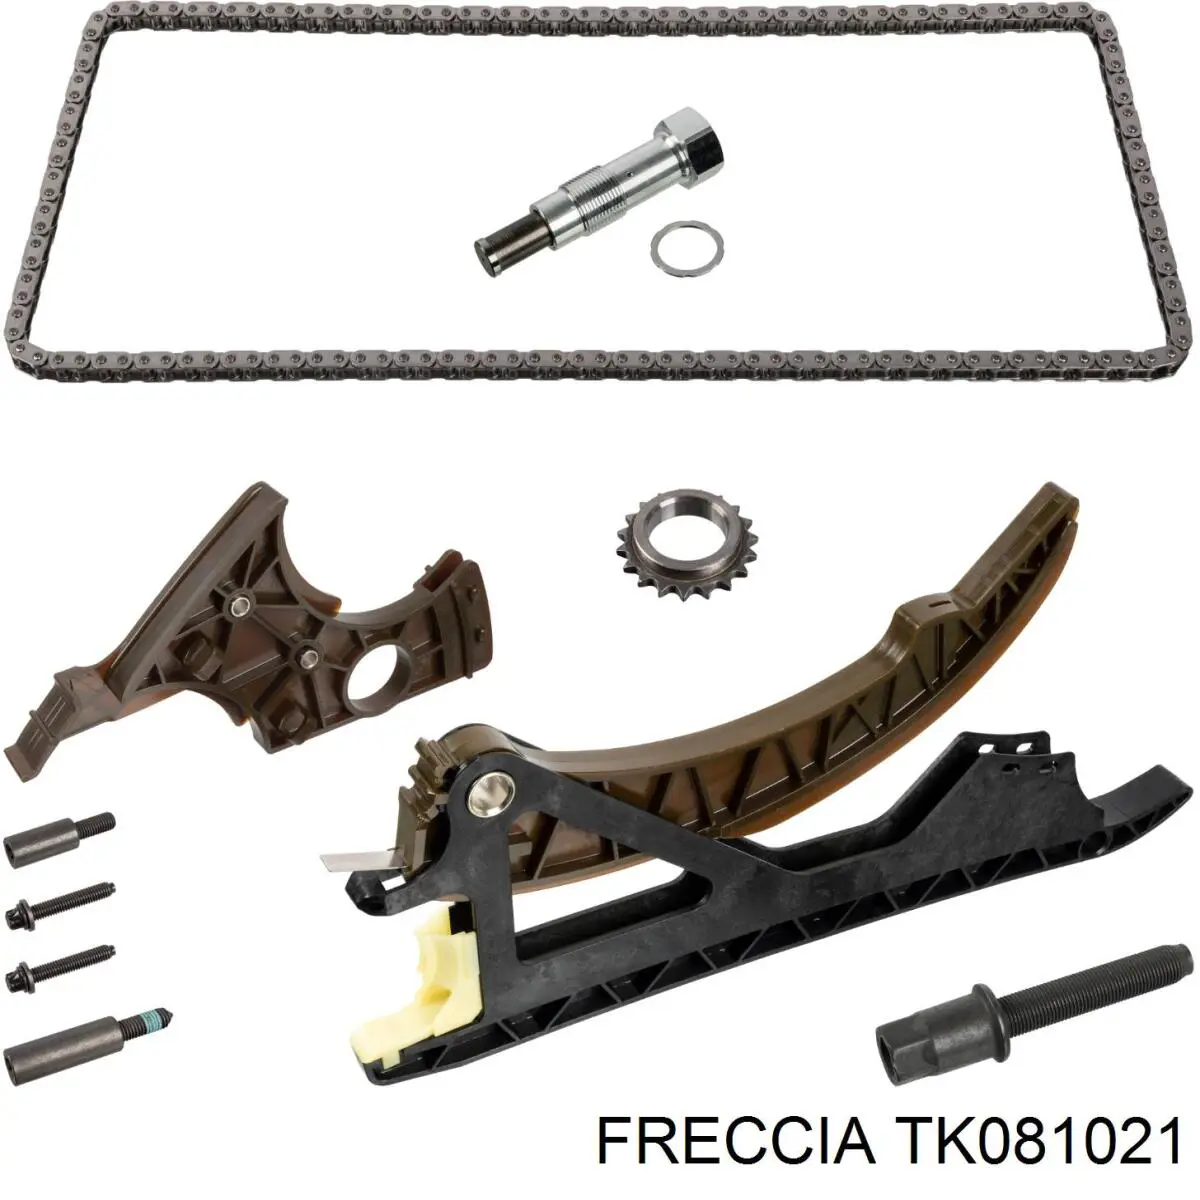 TK081021 Freccia kit de cadenas de distribución